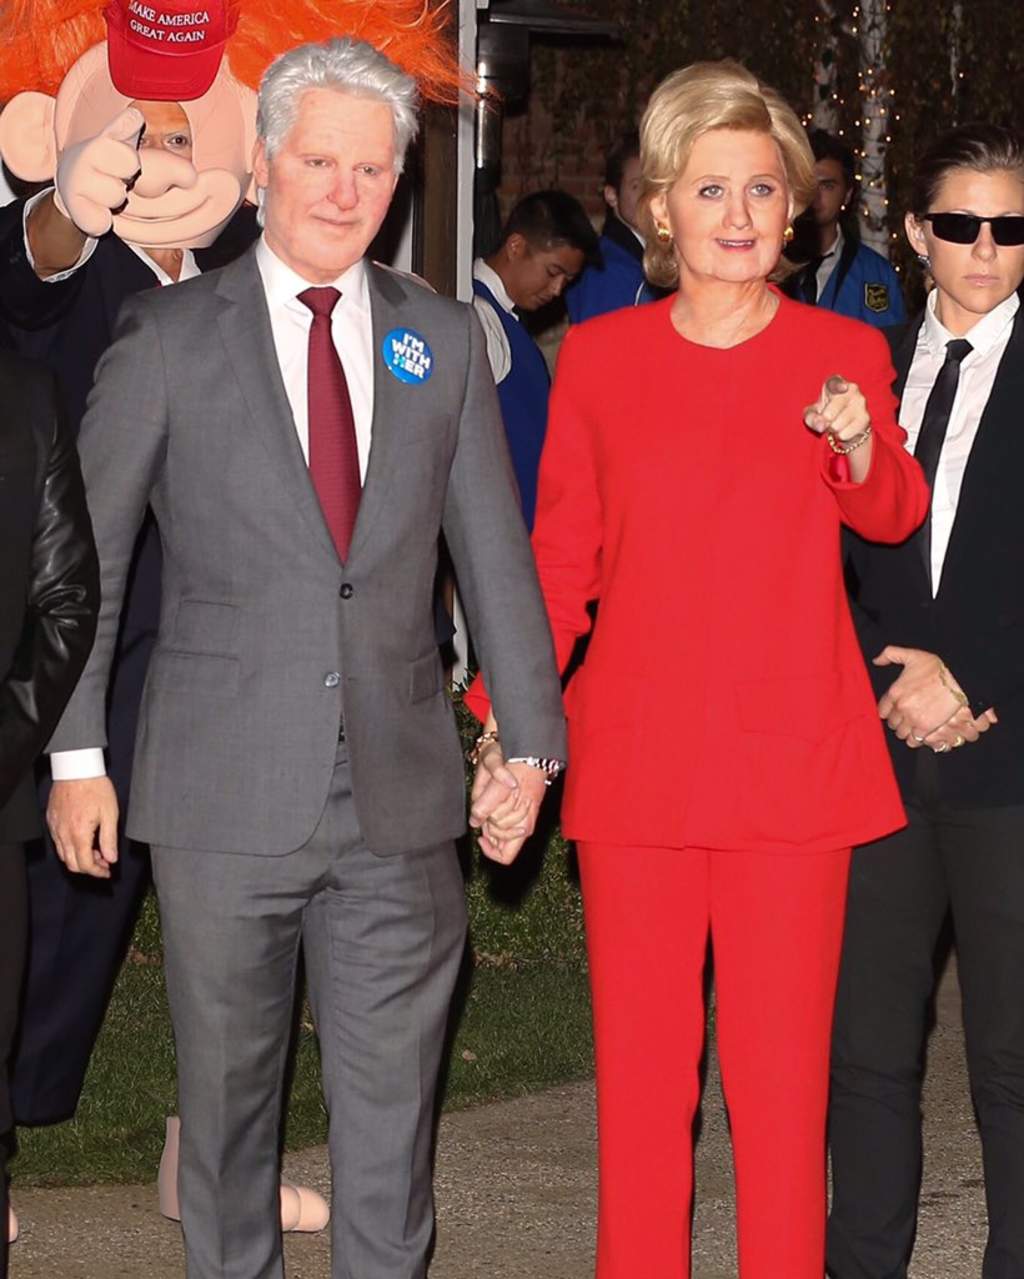 Perry y Bloom se transformaron en los Clinton. (TWITTER)